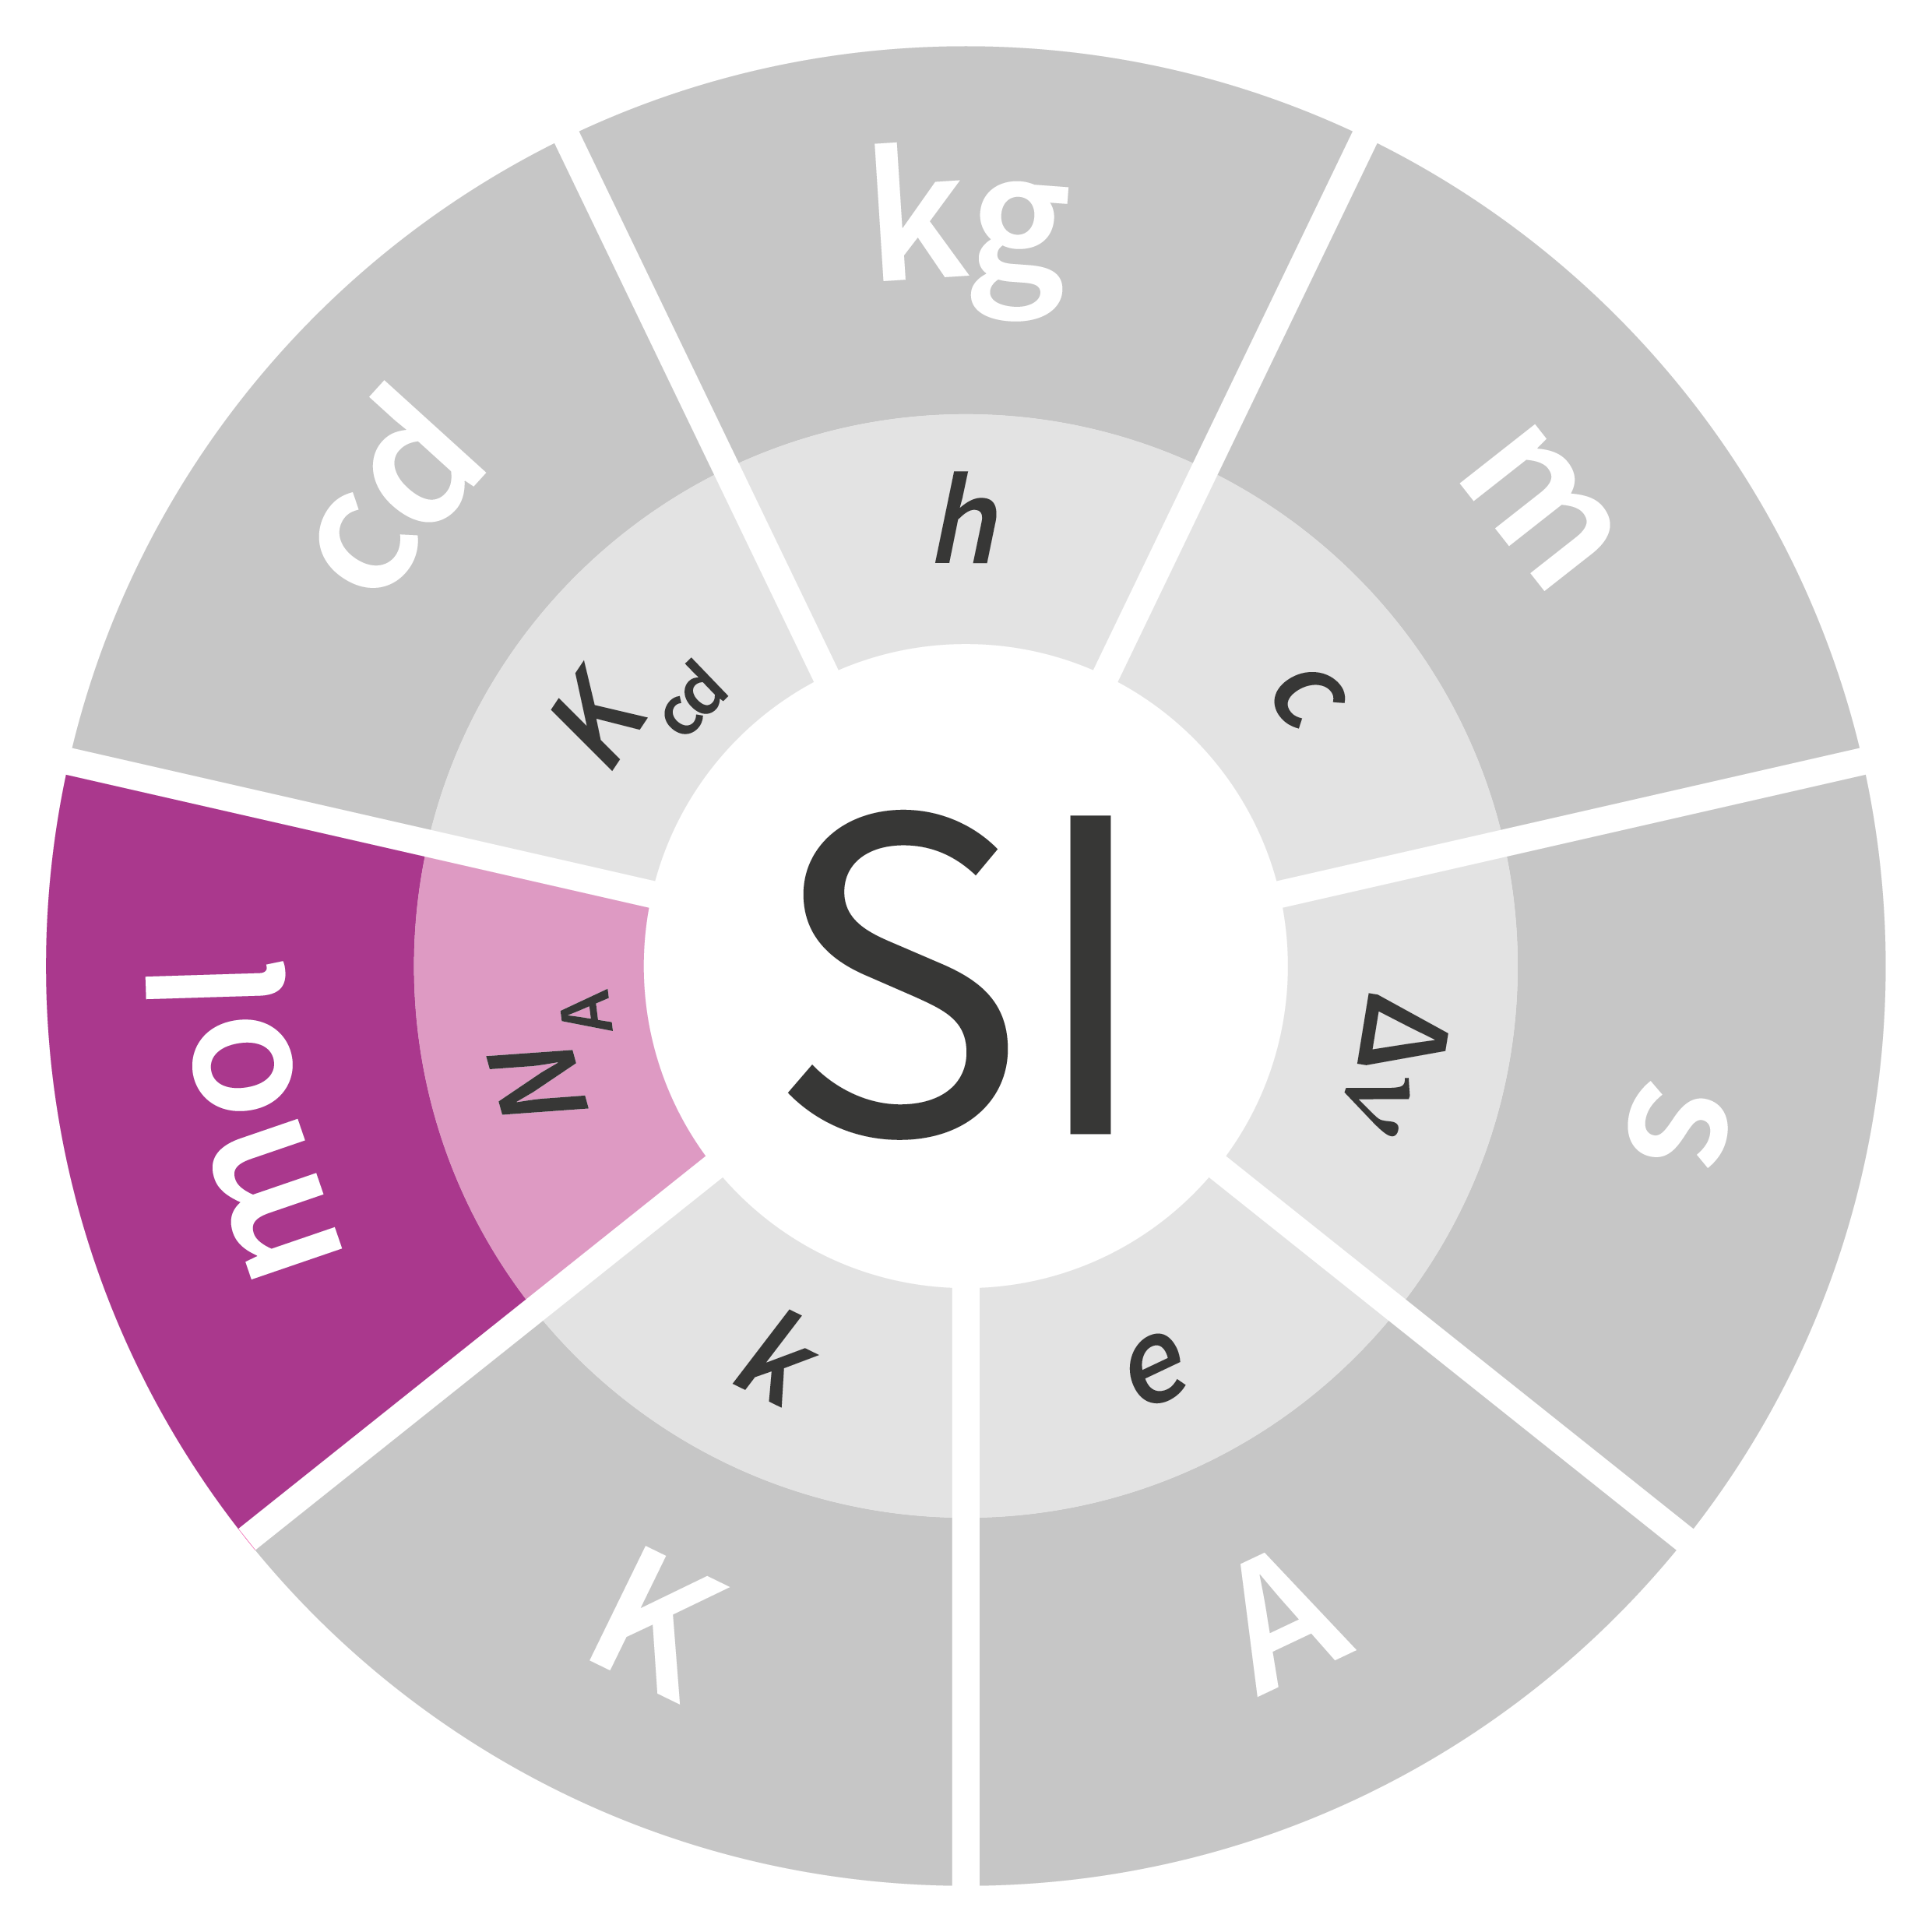  W logo SI w kształcie koła wpisane symbole jednostek miar: na fioletowo zaznaczony symbol mola. Pozostałe jednostki miar wyszarzone. Pod nimi w kole znajdują się również symbole stałych definiujących.